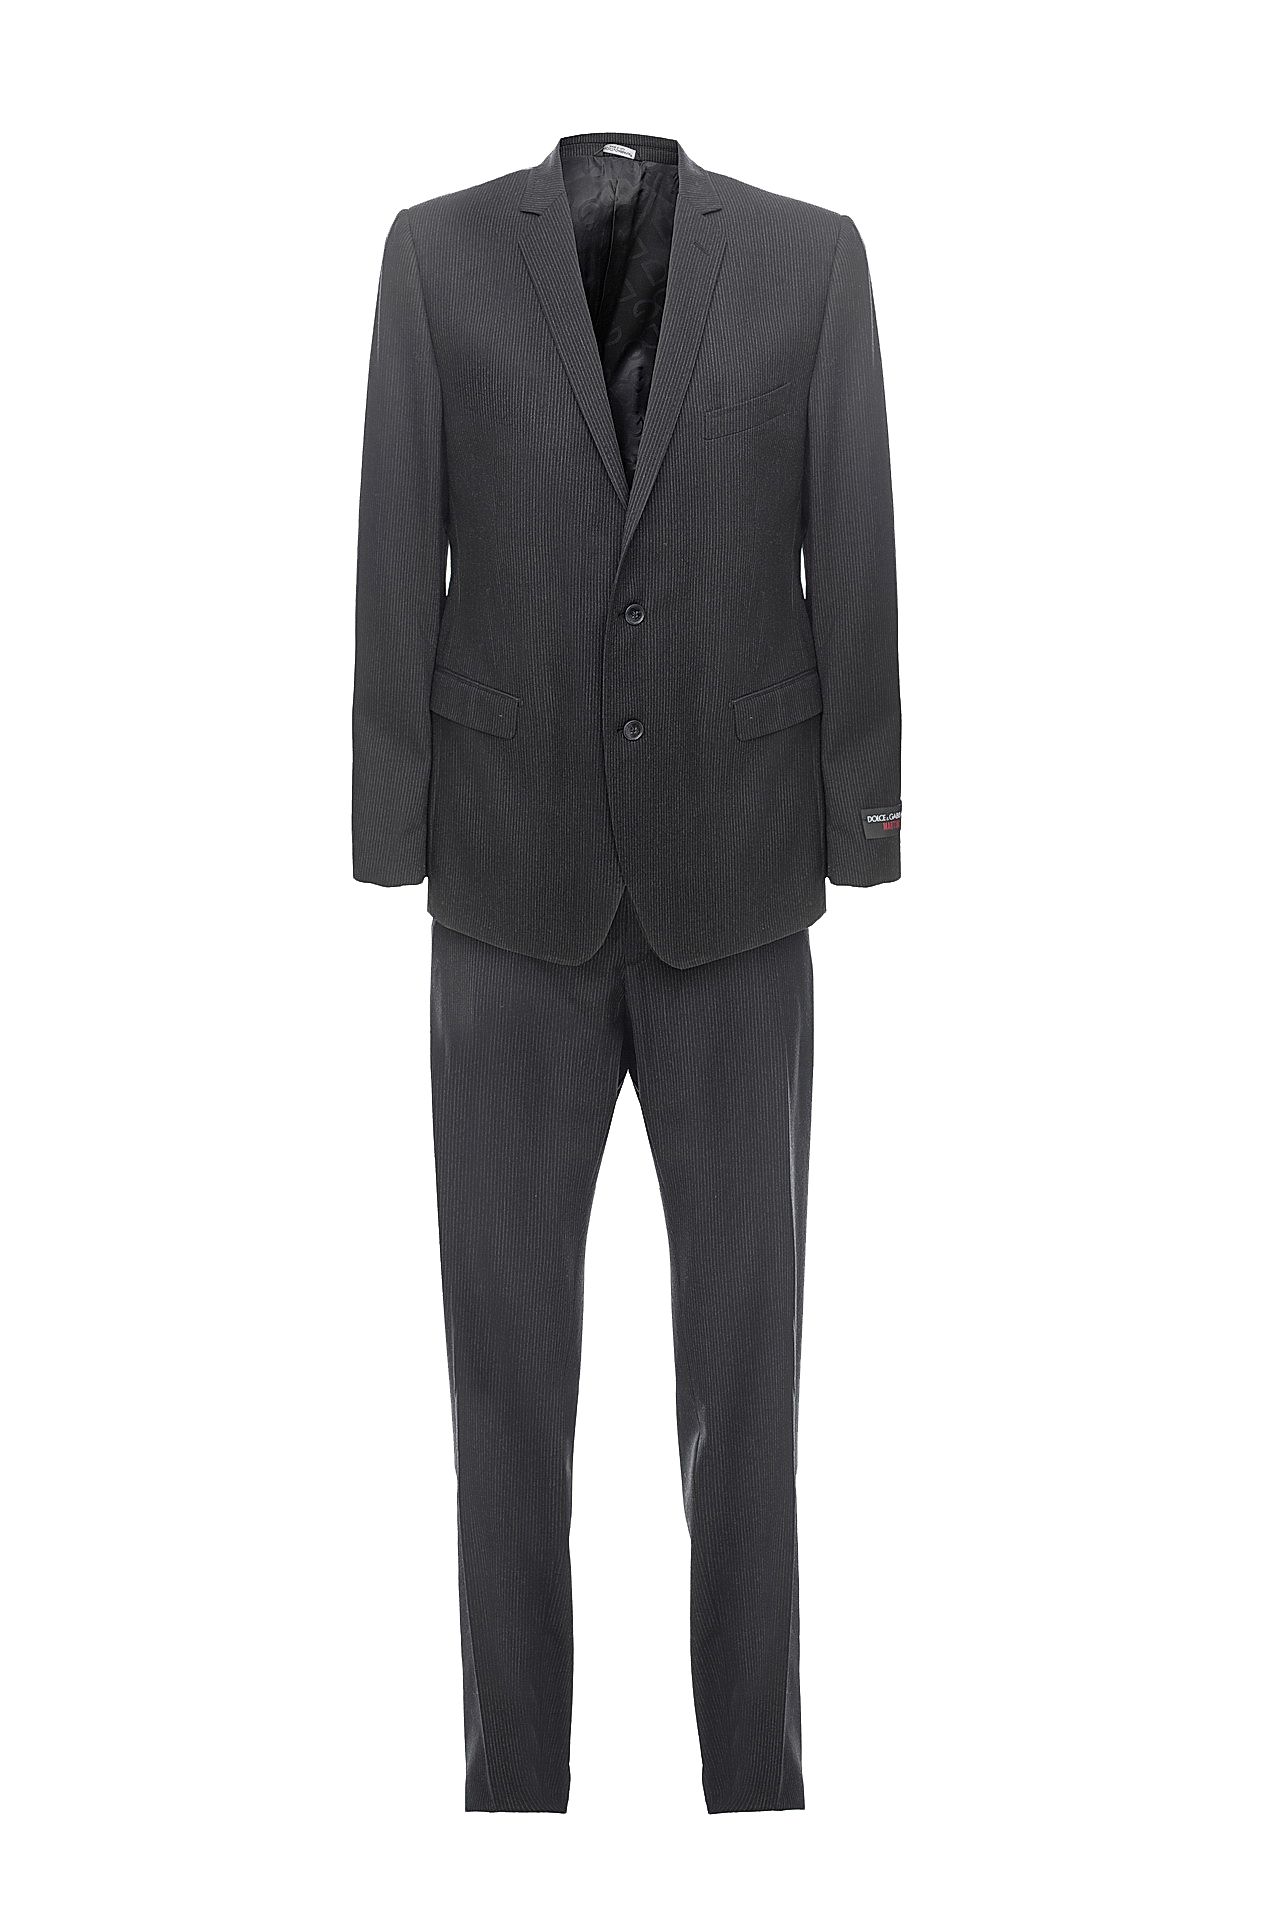 Одежда мужская Костюм DOLCE & GABBANA (G1K7MTFRBAG/10.1). Купить за 47750 руб.